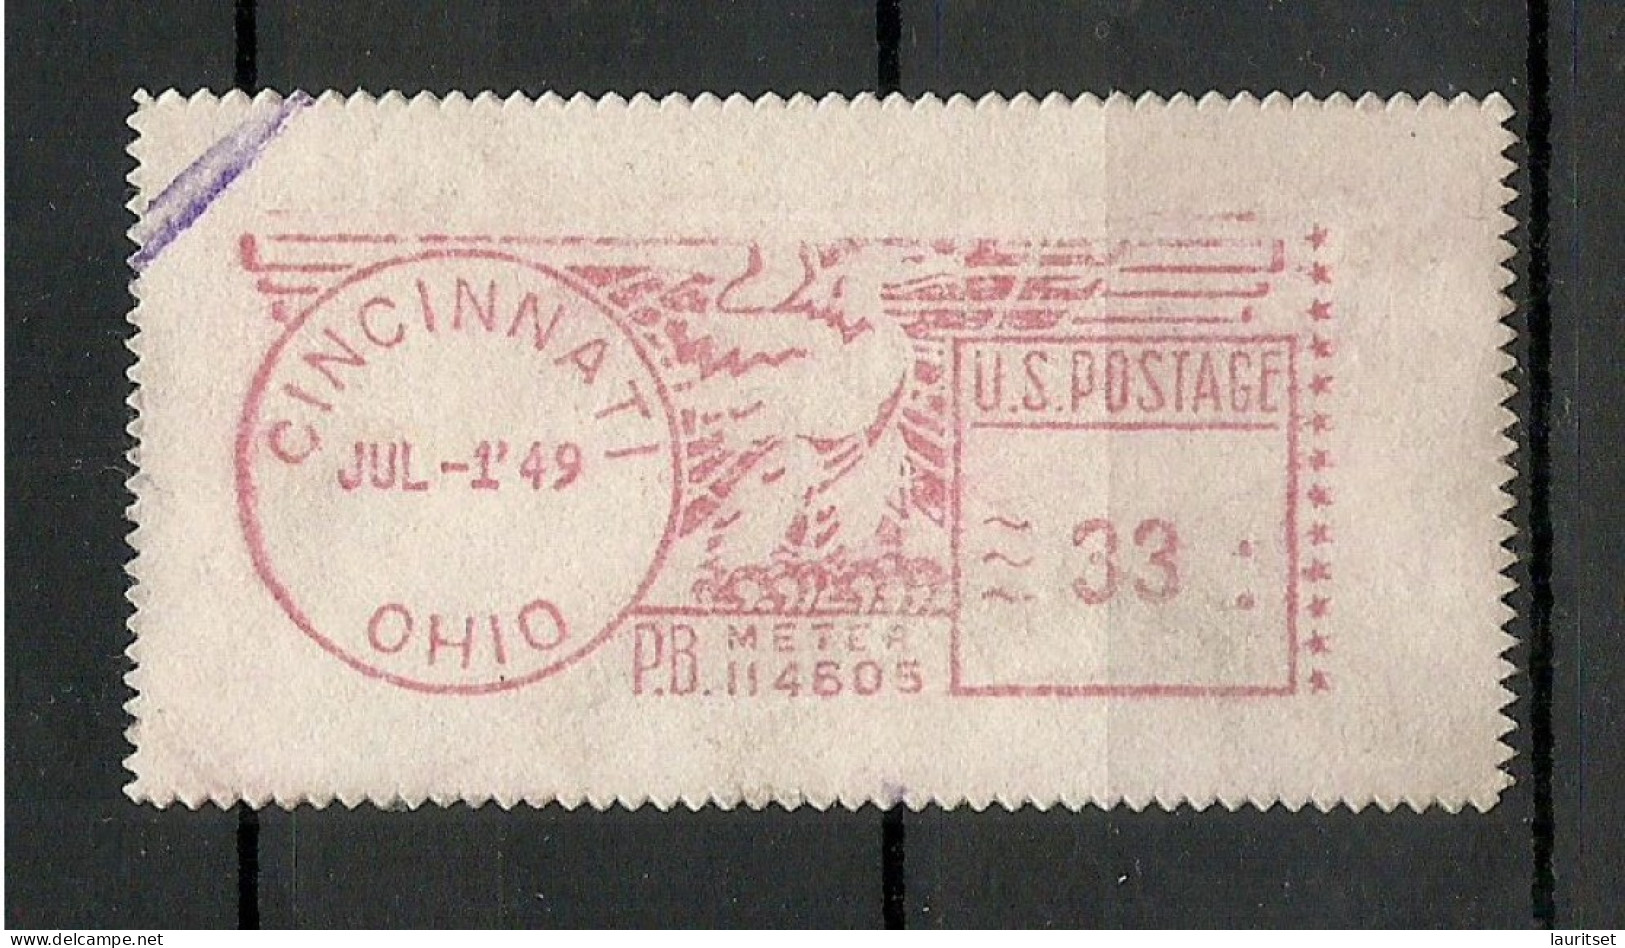 USA 1949 Cincinnati Ohio Meter Stamp - Gebruikt